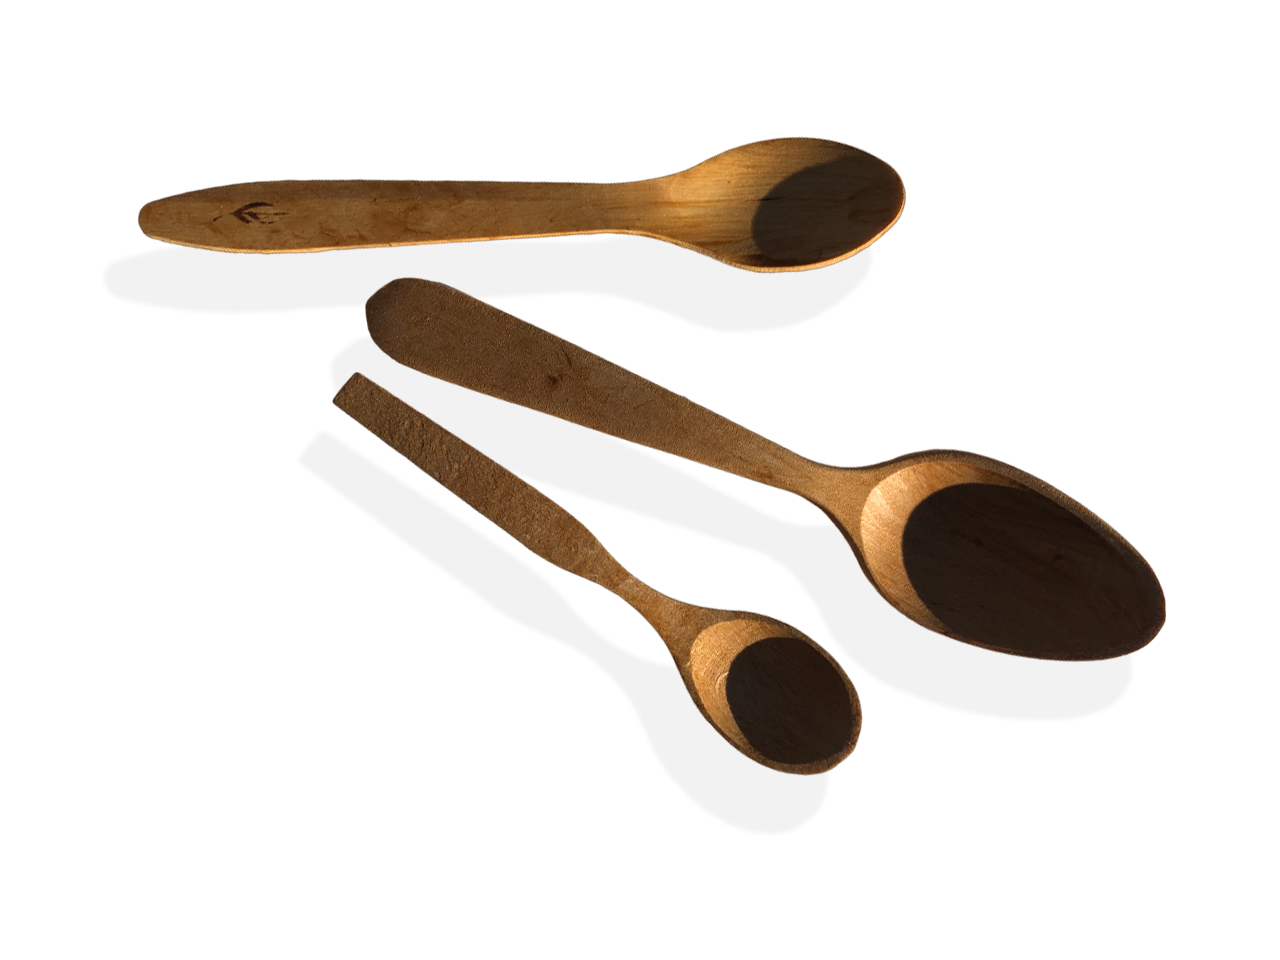 Cucchiaio da cucina in legno.